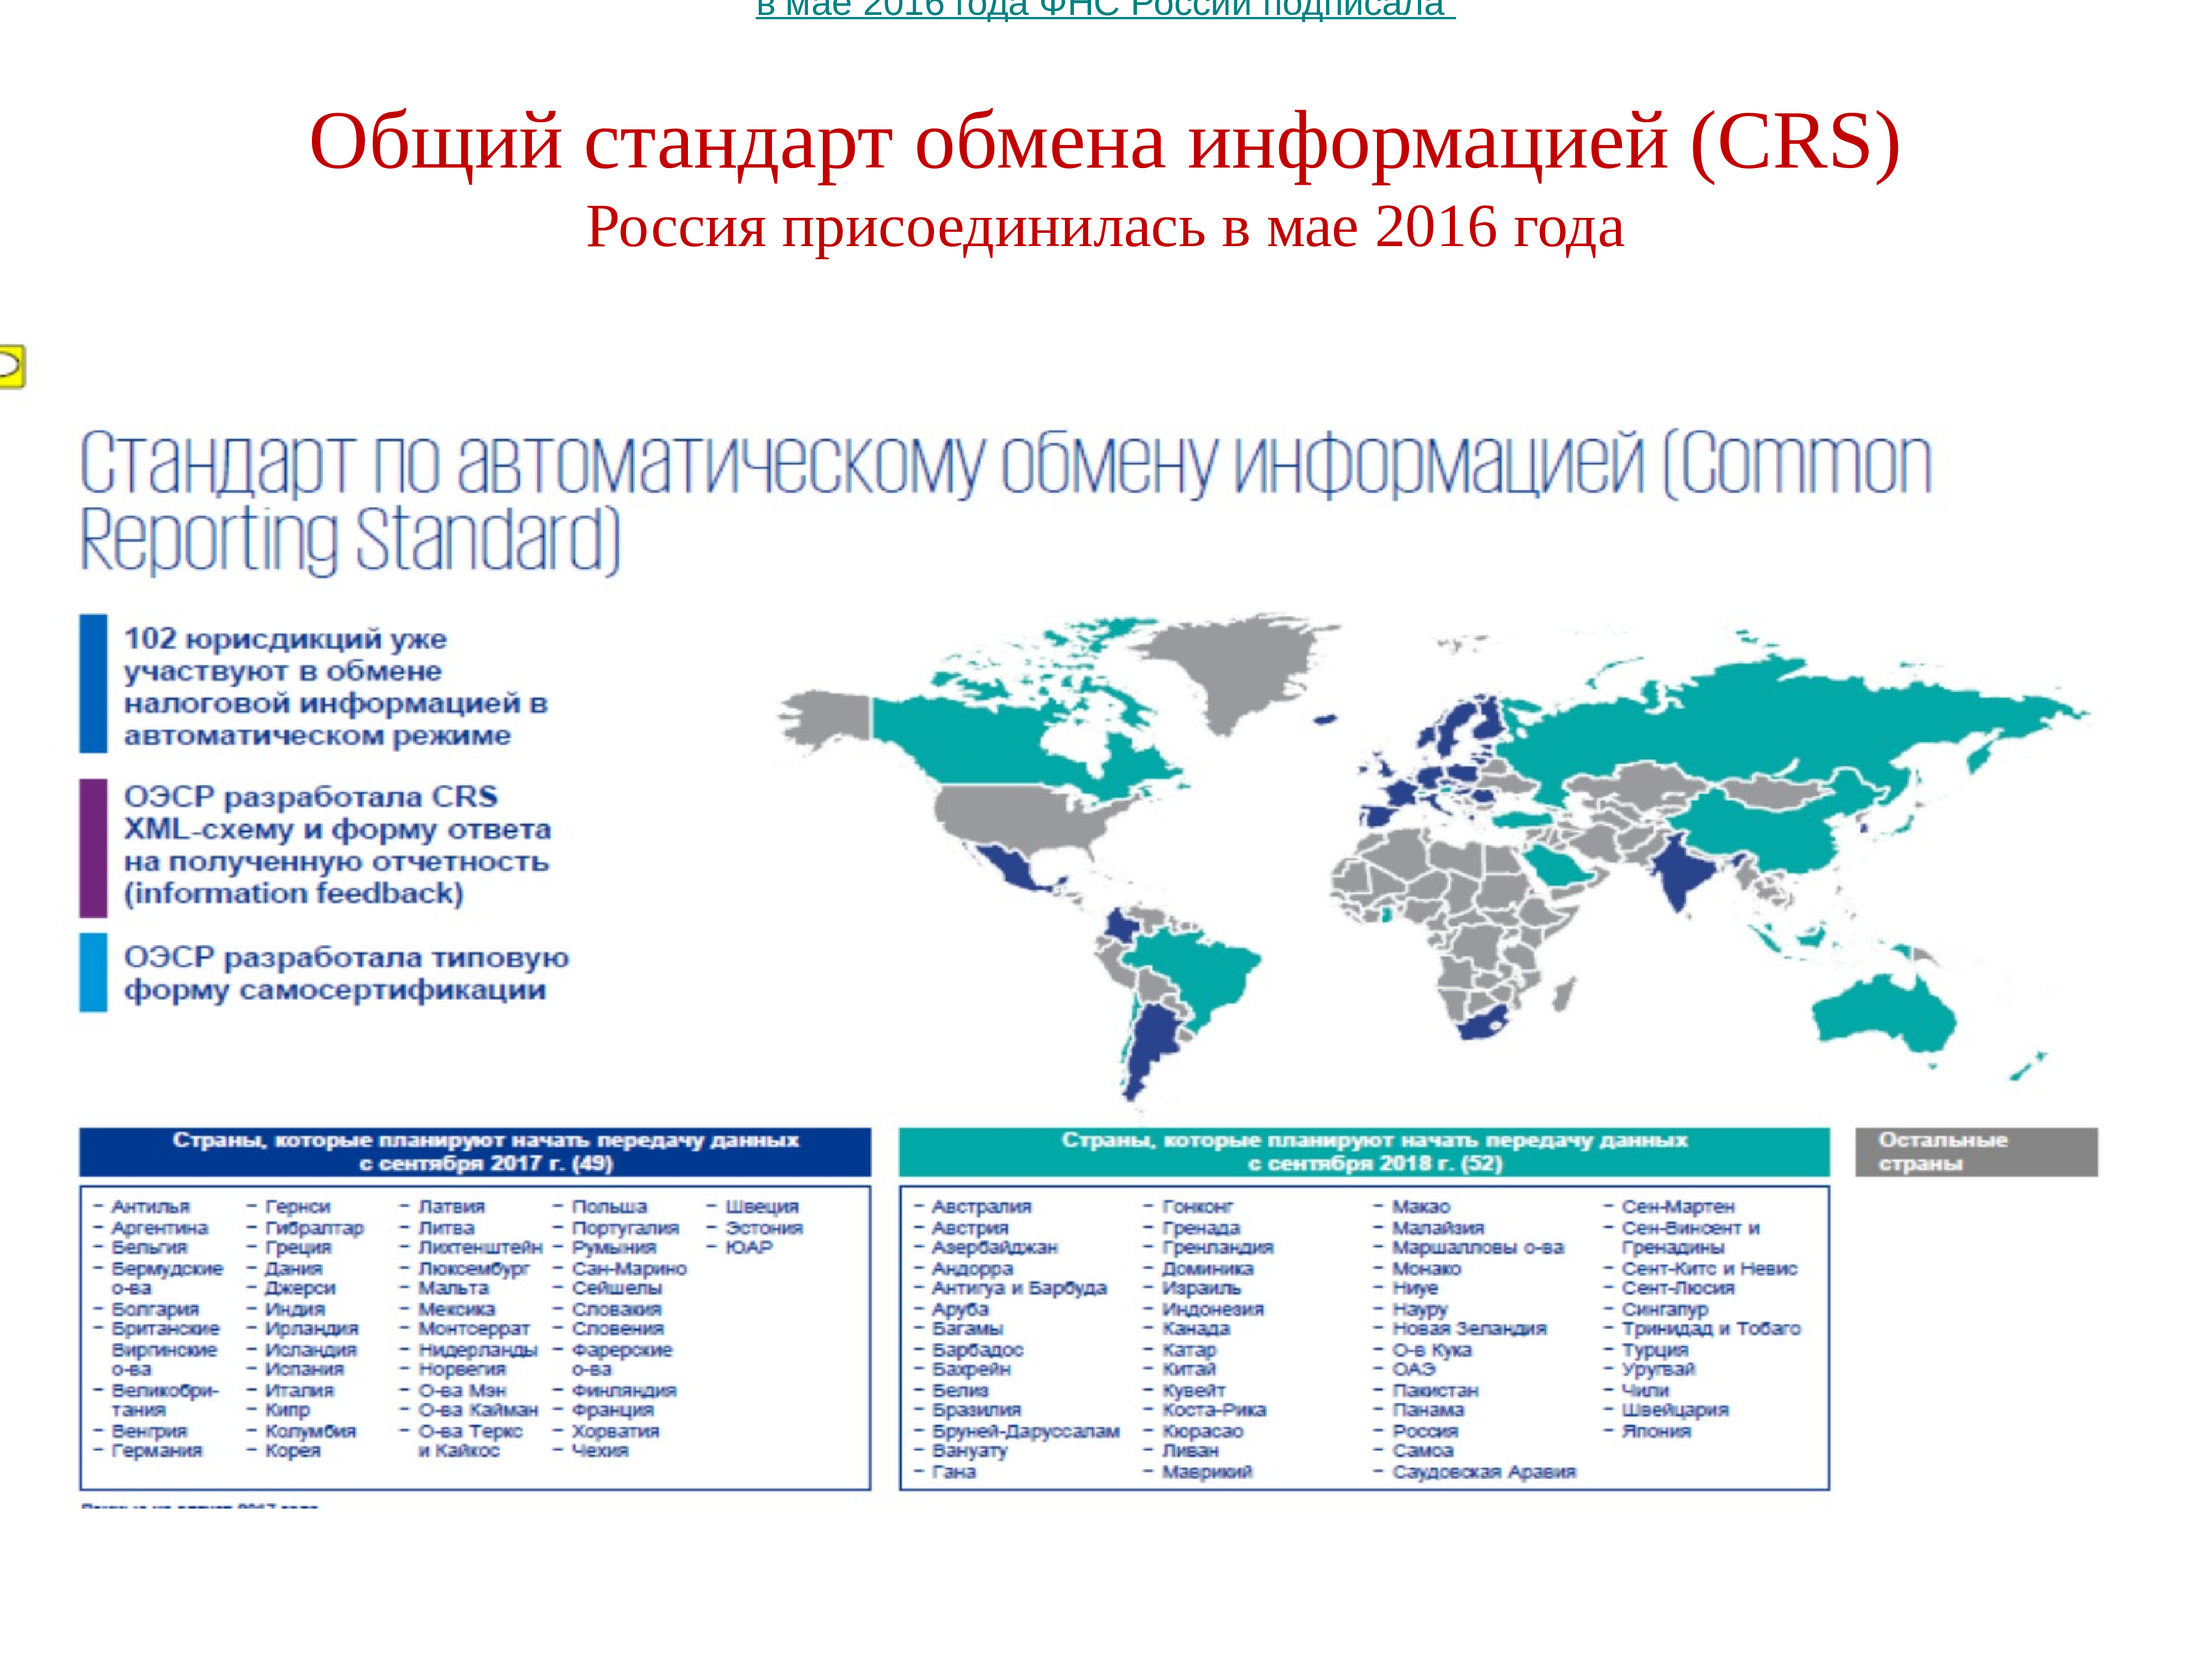 Основные экономические вызовы россии. CRS стандарт ОЭСР. Стандарты обмена информацией это. Автоматический обмен финансовой информацией. Внешние вызовы России.